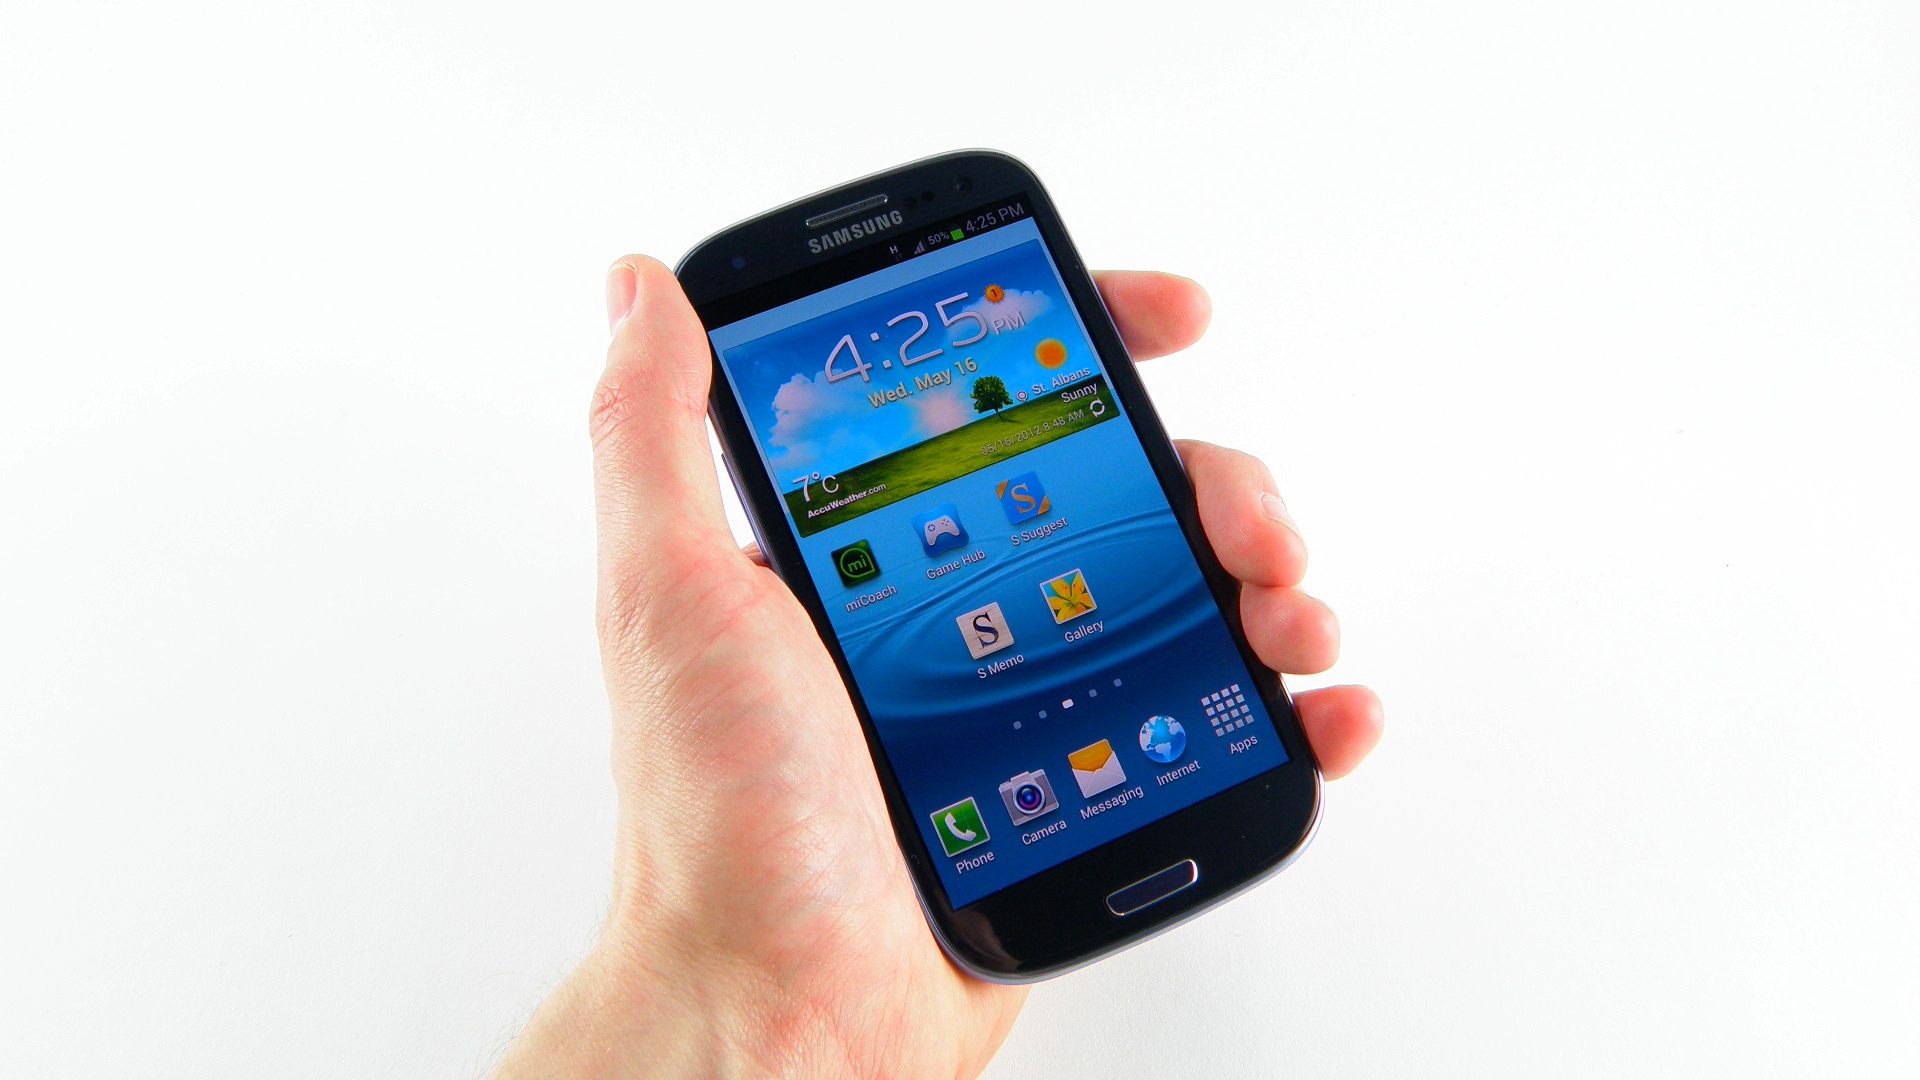 S3 Samsung Galaxy là chiếc điện thoại thông minh hoàn hảo cho bạn liên lạc và gọi thoải mái. Với thiết kế nhỏ gọn, cấu hình mạnh mẽ, camera chất lượng, đây là lựa chọn thông minh cho cuộc sống bận rộn của bạn.